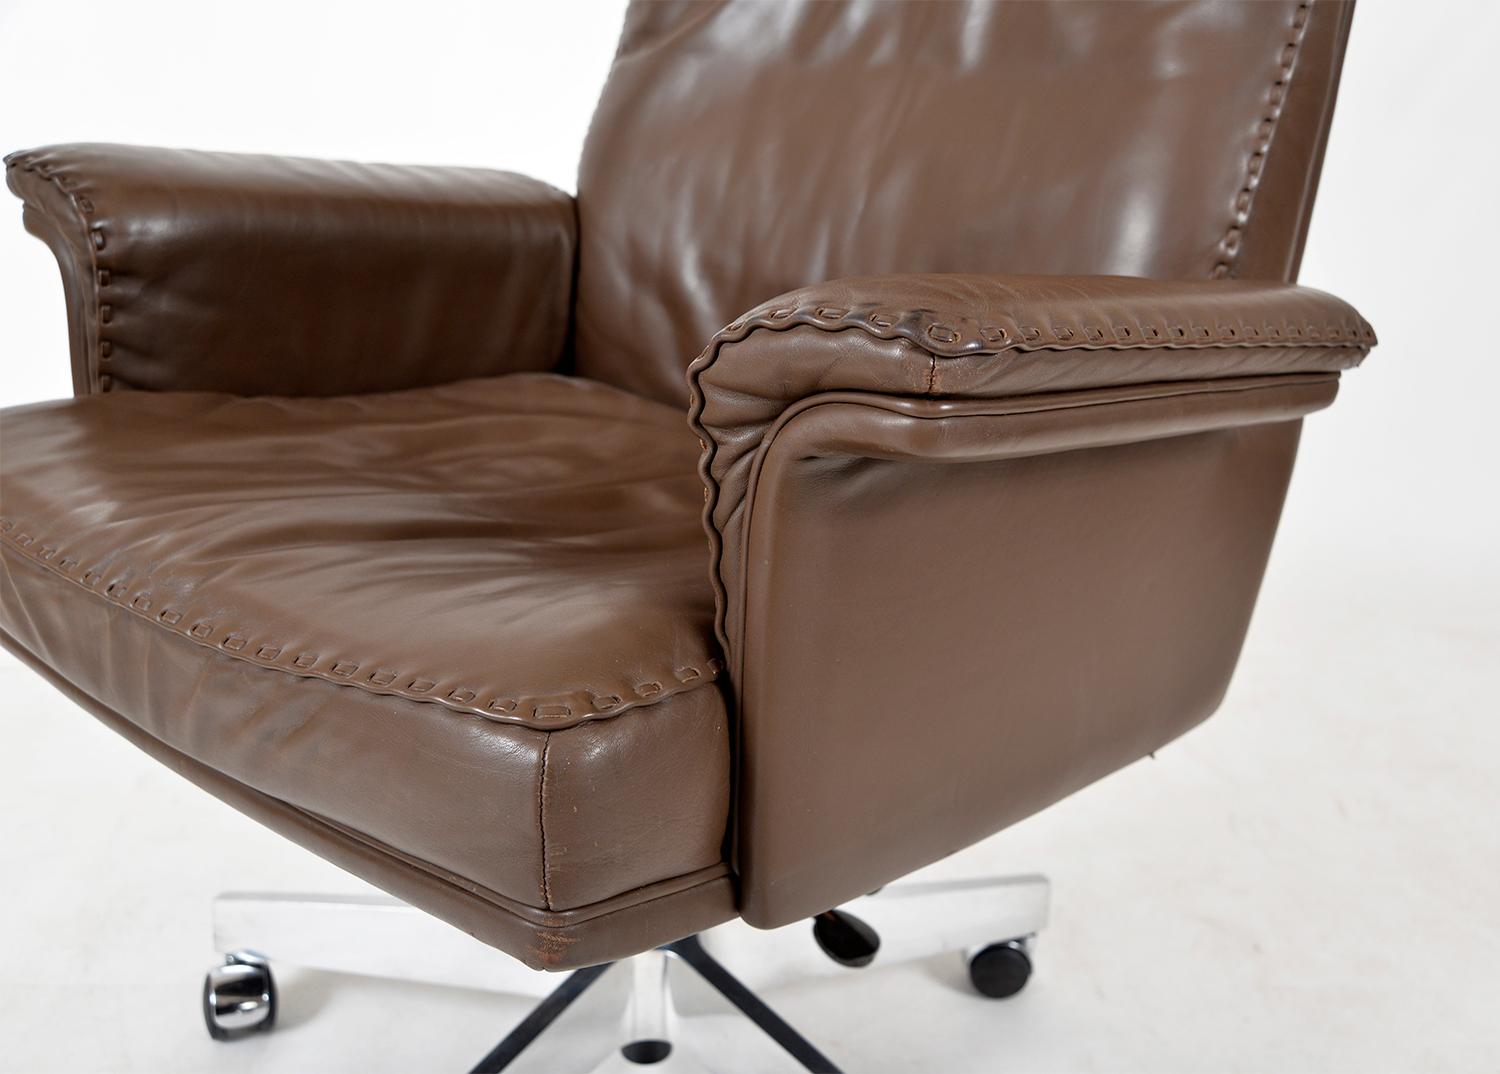 1970s Swiss De Sede Ds 35 Executive Swivel Leather Office Chair Armchair Castors 3